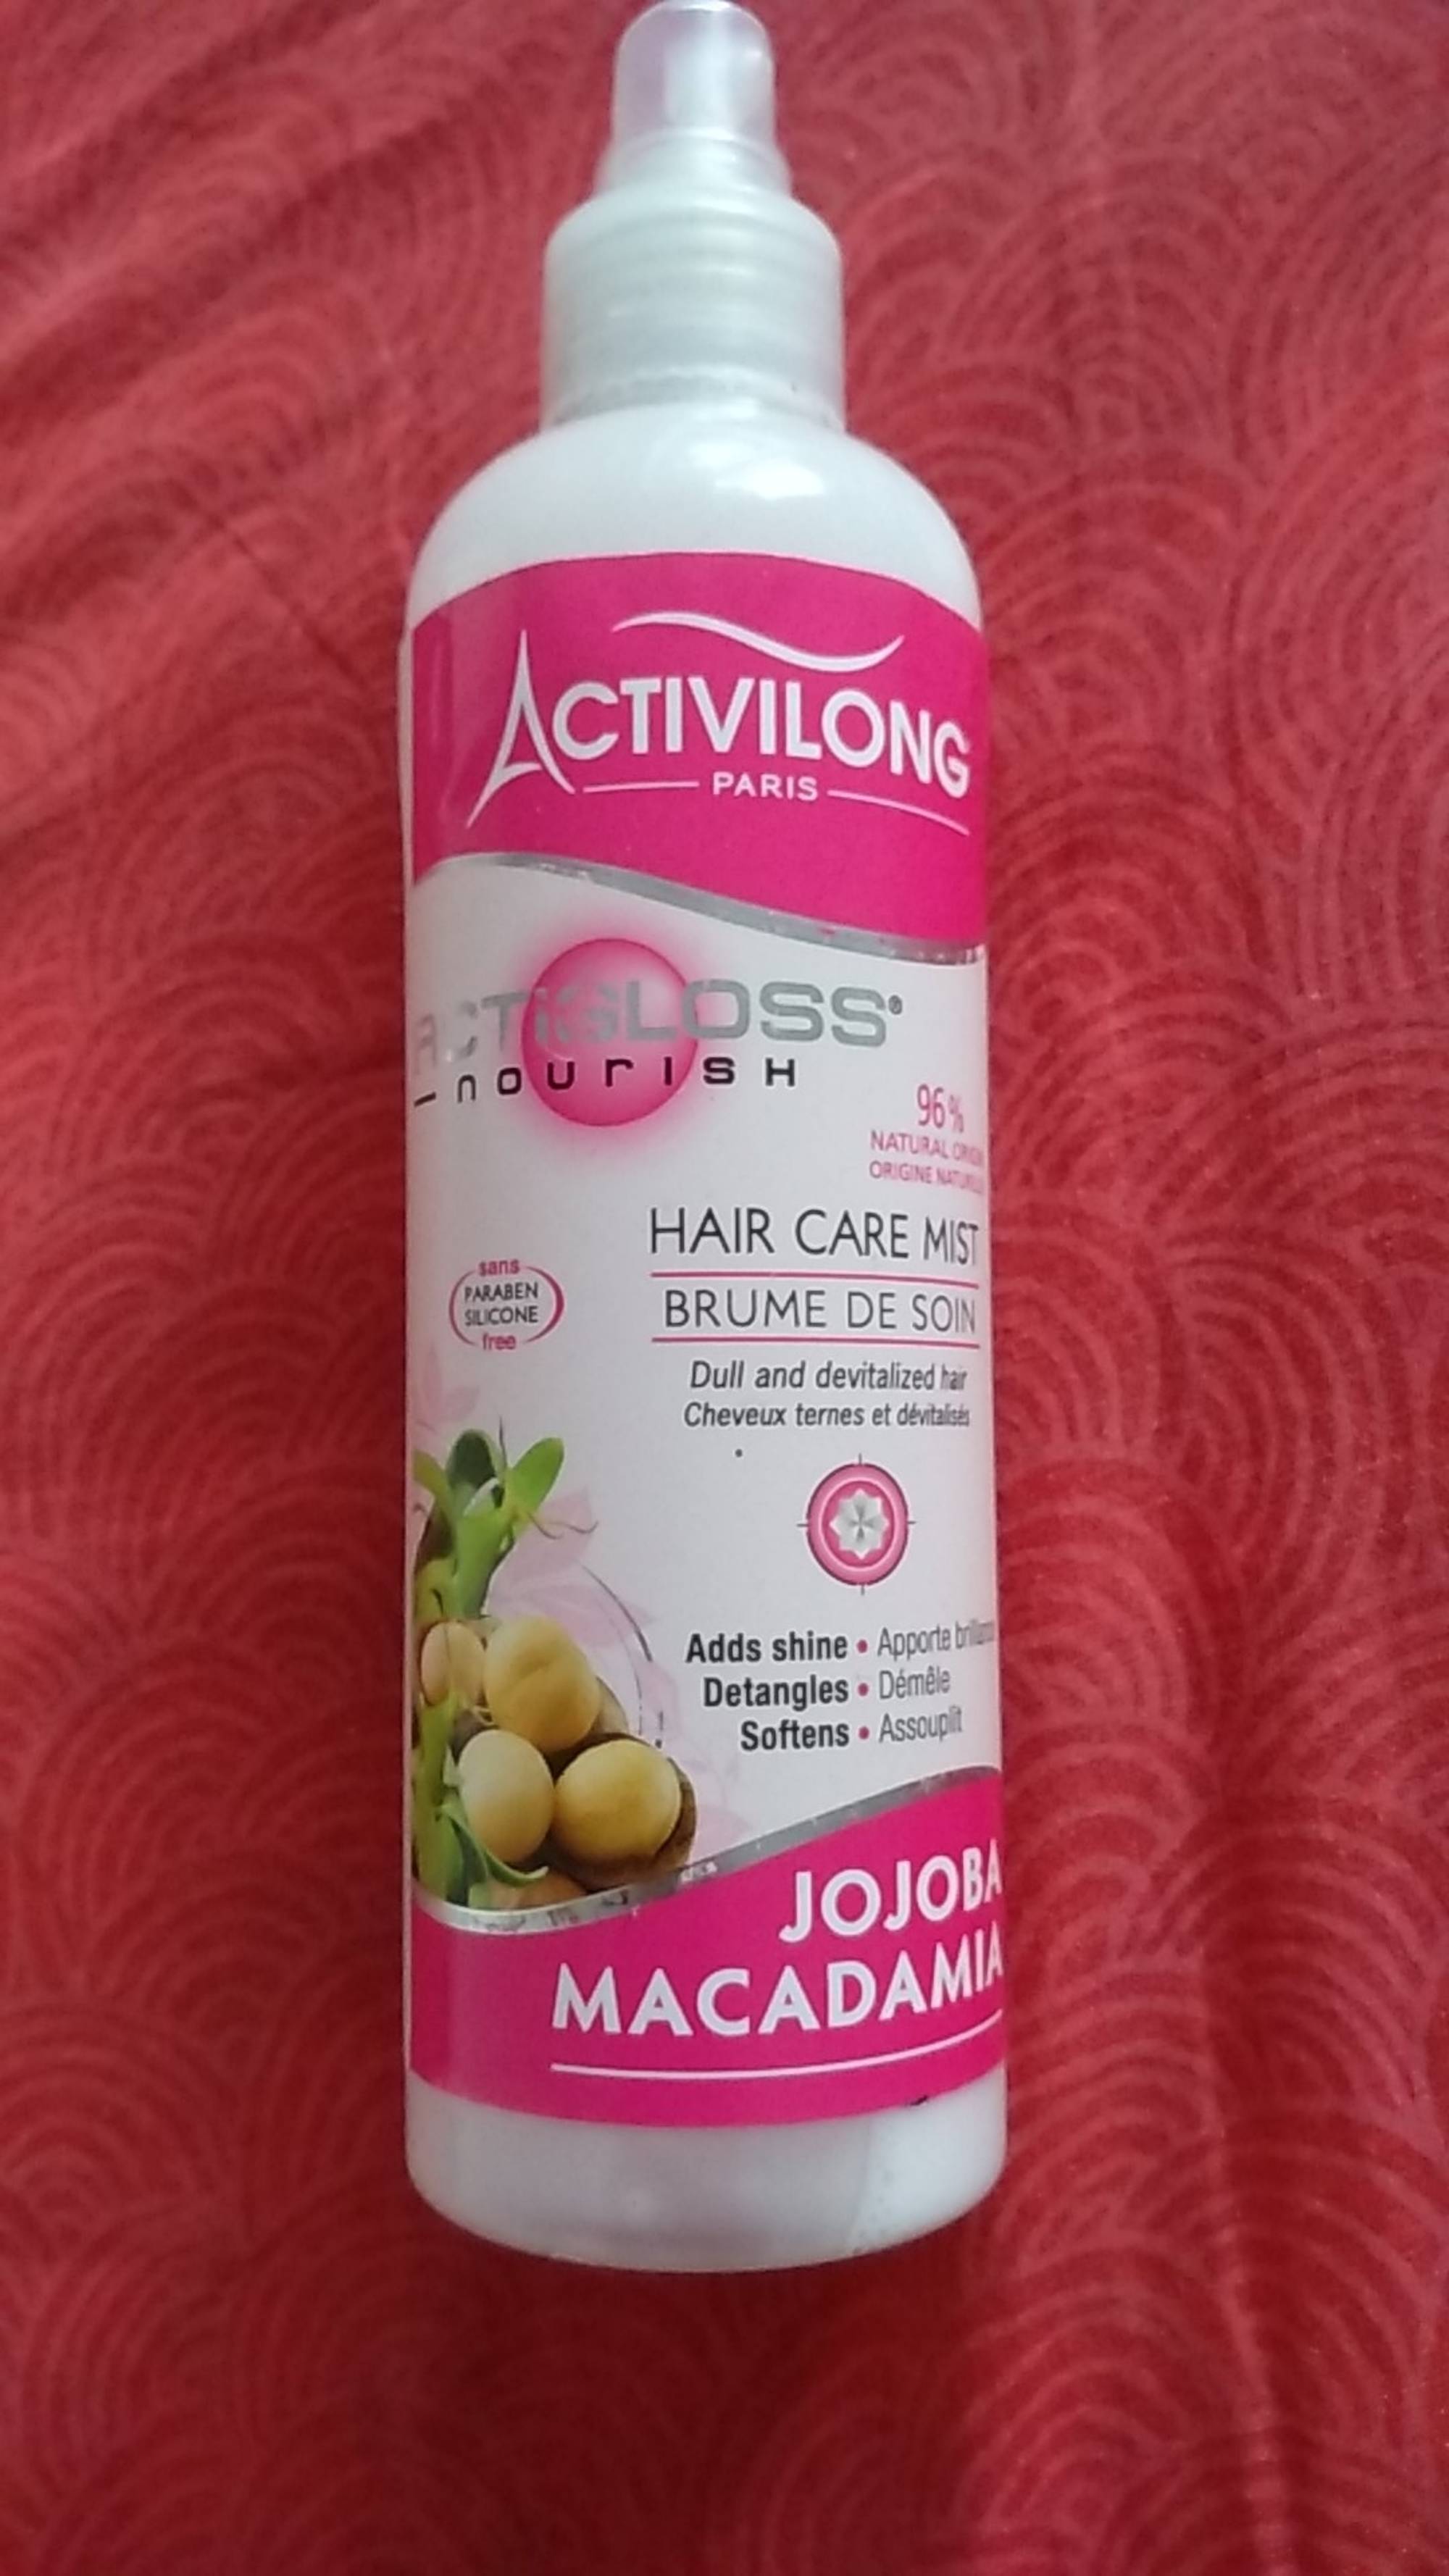 ACTIVILONG - Actigloss - Brume de soin jojoba macadamia